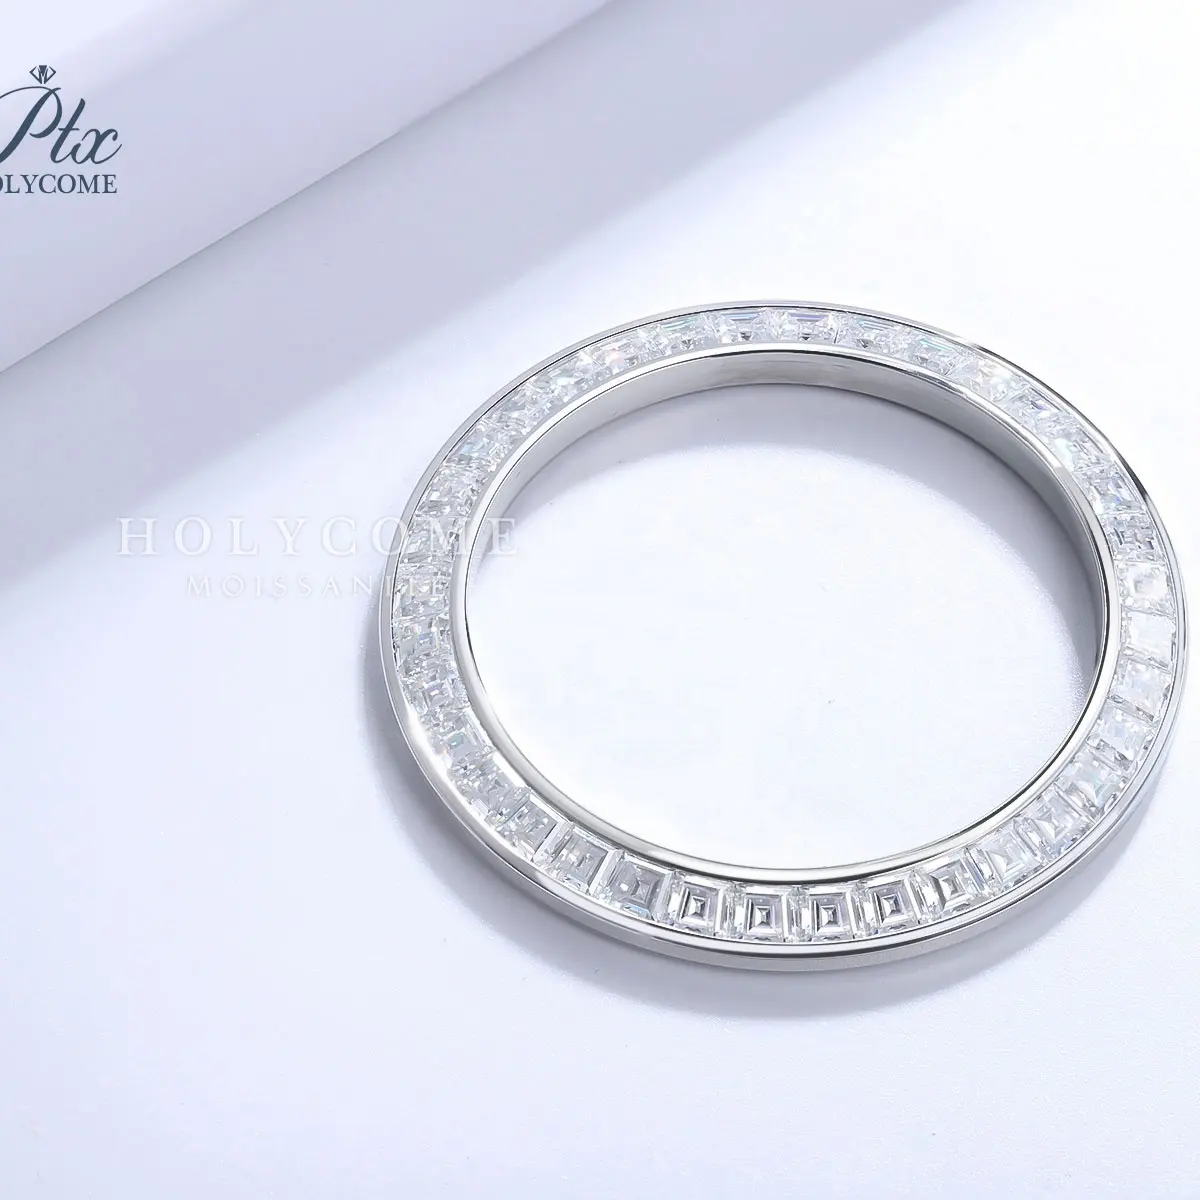 Diamante de moissanita, piedra preciosa suelta de Color arcoíris inoxidable, personalizable, 40mm, bisel para reloj